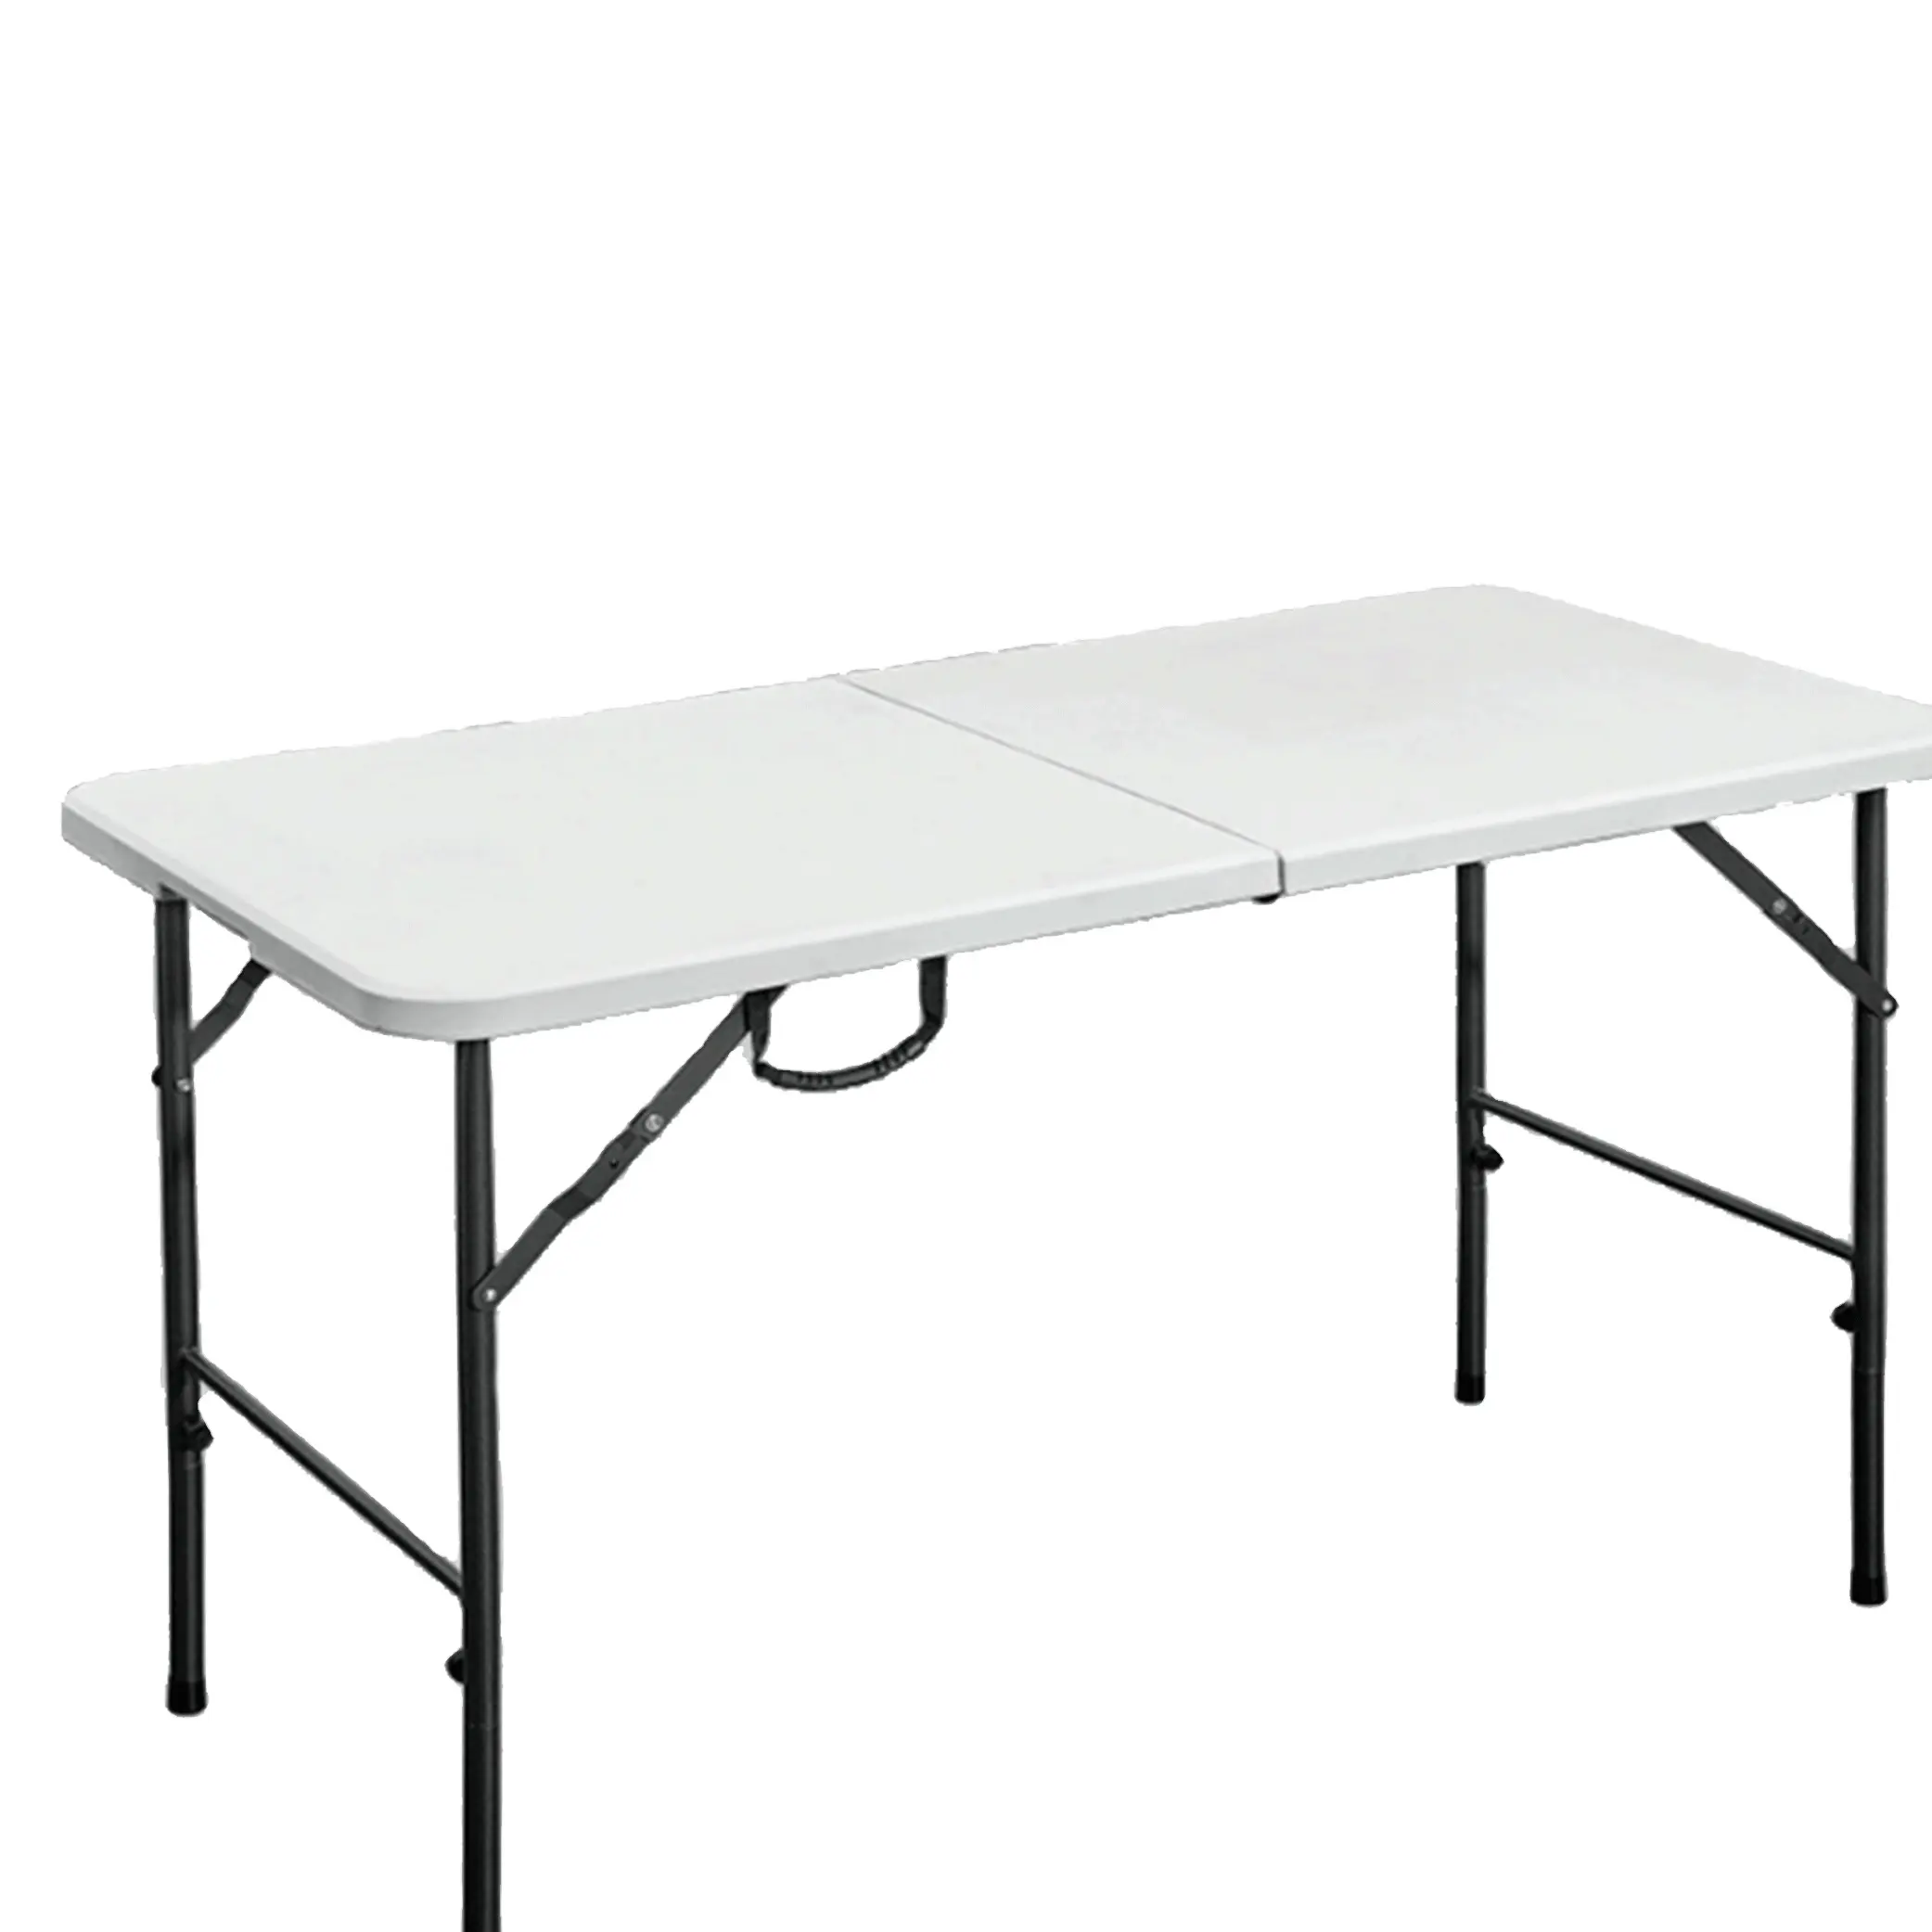 4' coup moule table pliante moins cher en plein air table en plastique pliante de haute qualité à vendre